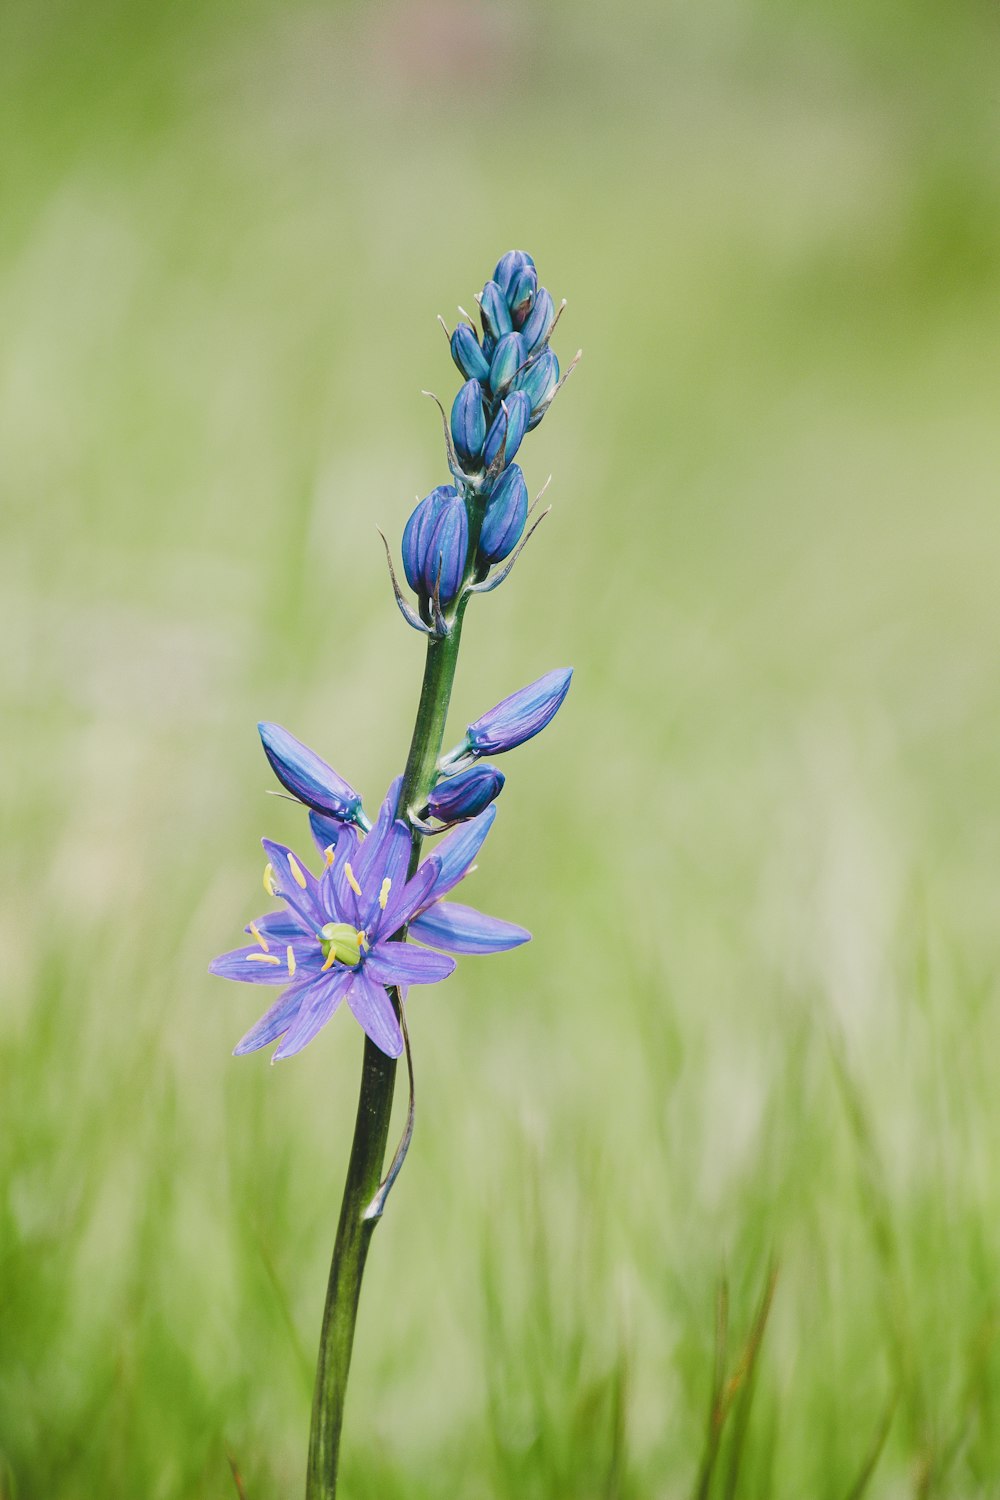 a single blue flower in a grassy field